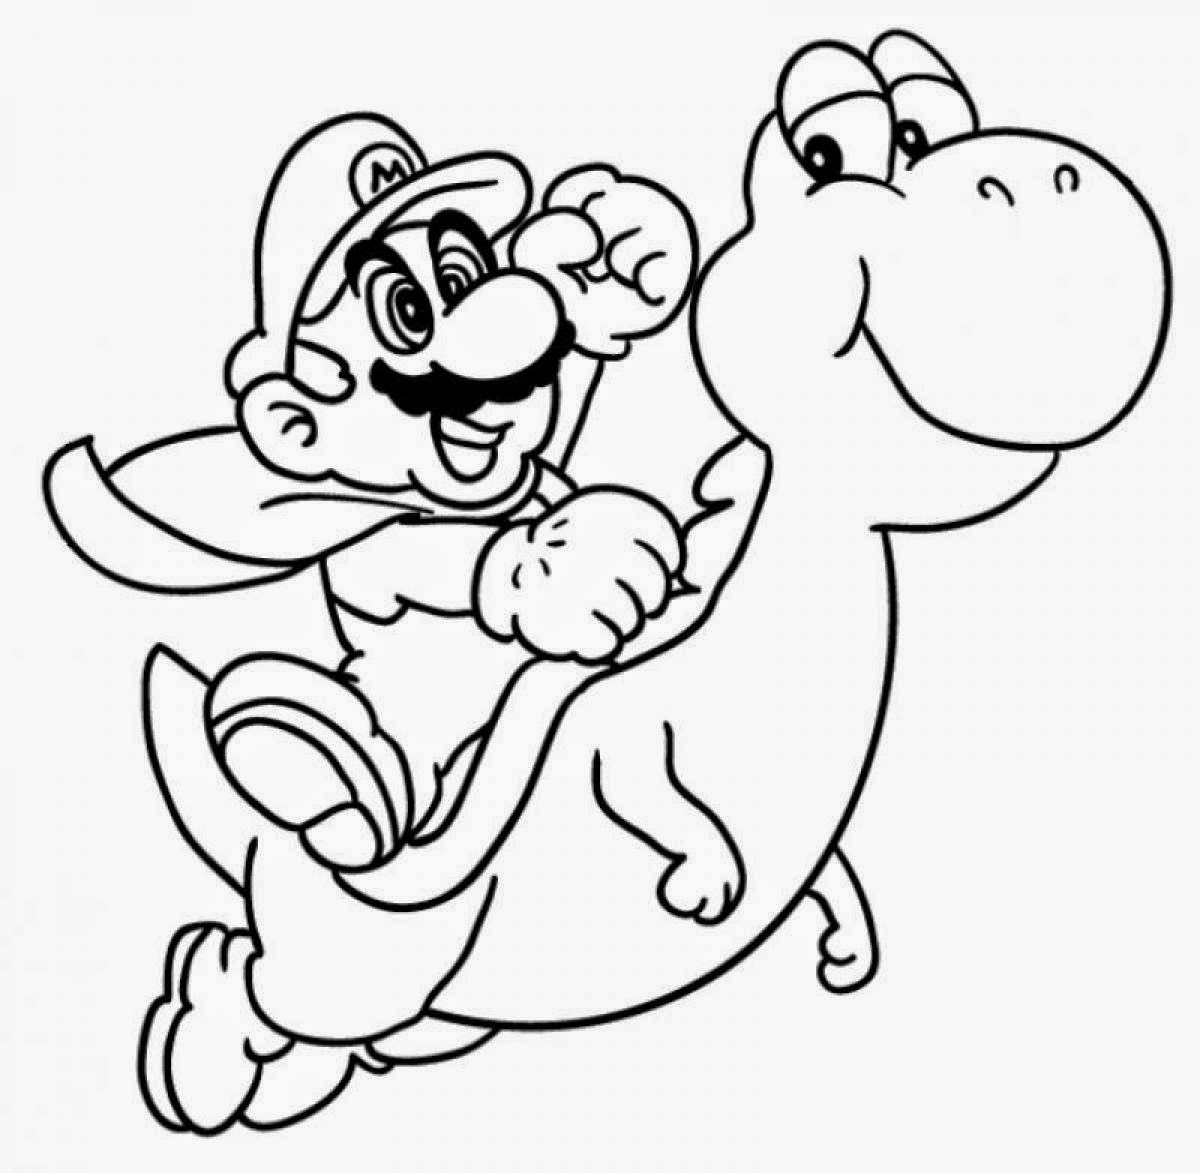 Dibujos De Super Mario Bros 153719 Videojuegos Para Colorear